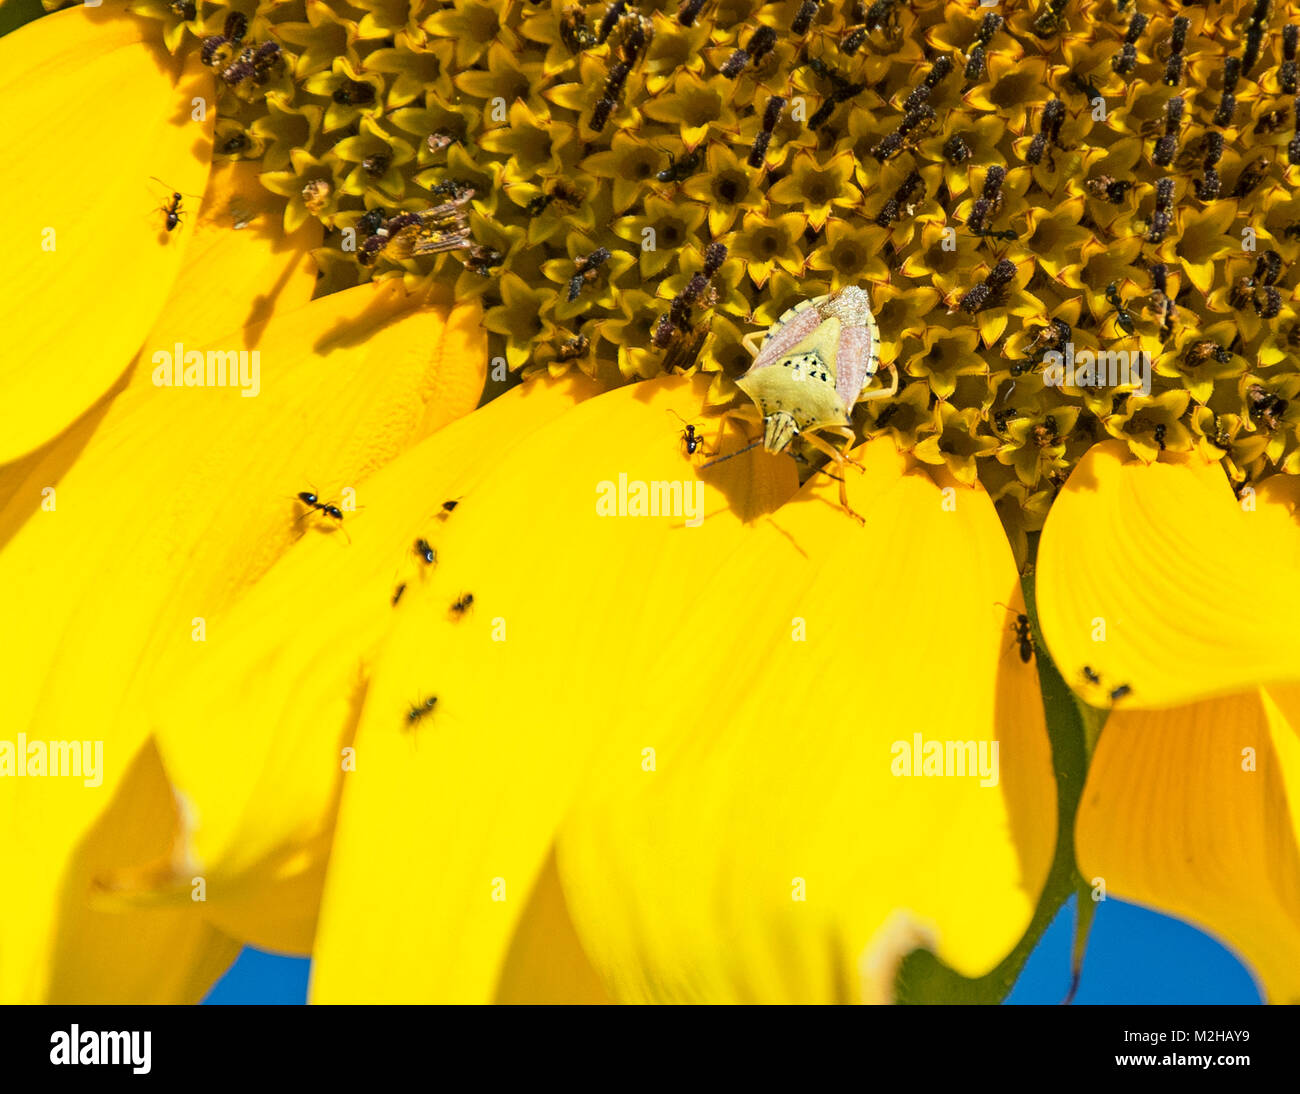 Nahaufnahme eines grünlichen Schildwanzes auf einem Teil von Eine riesige gelbe Sonnenblume mit schwarzen Ameisen rundherum Stockfoto